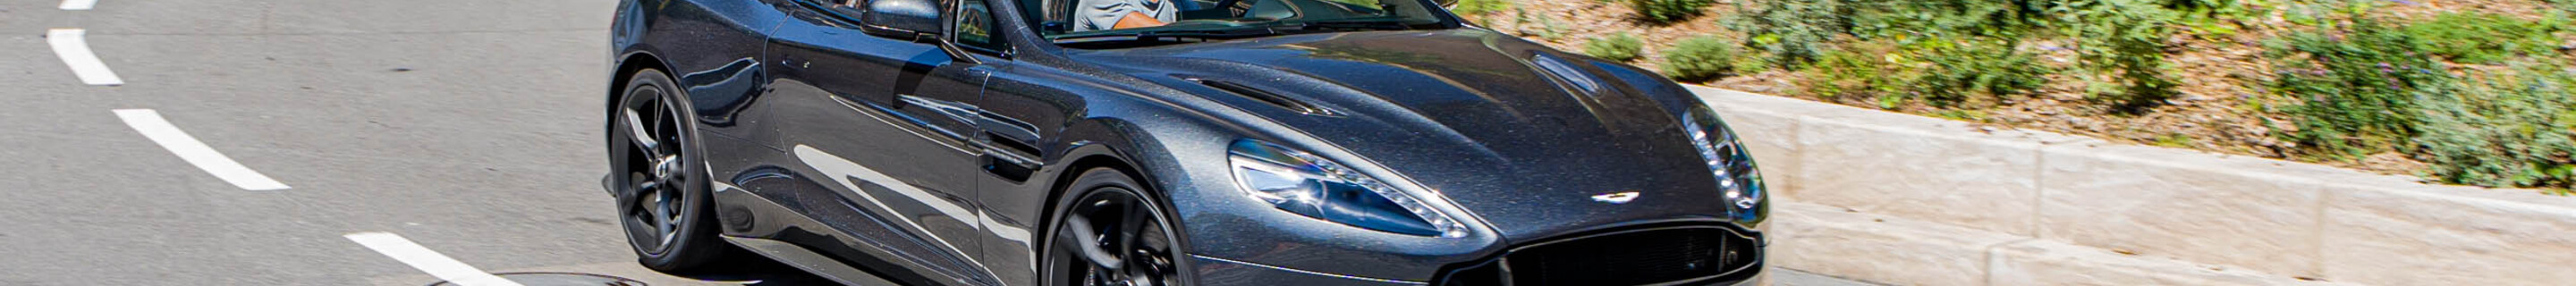 Aston Martin Vanquish S Volante 2017 Ultimate Edition